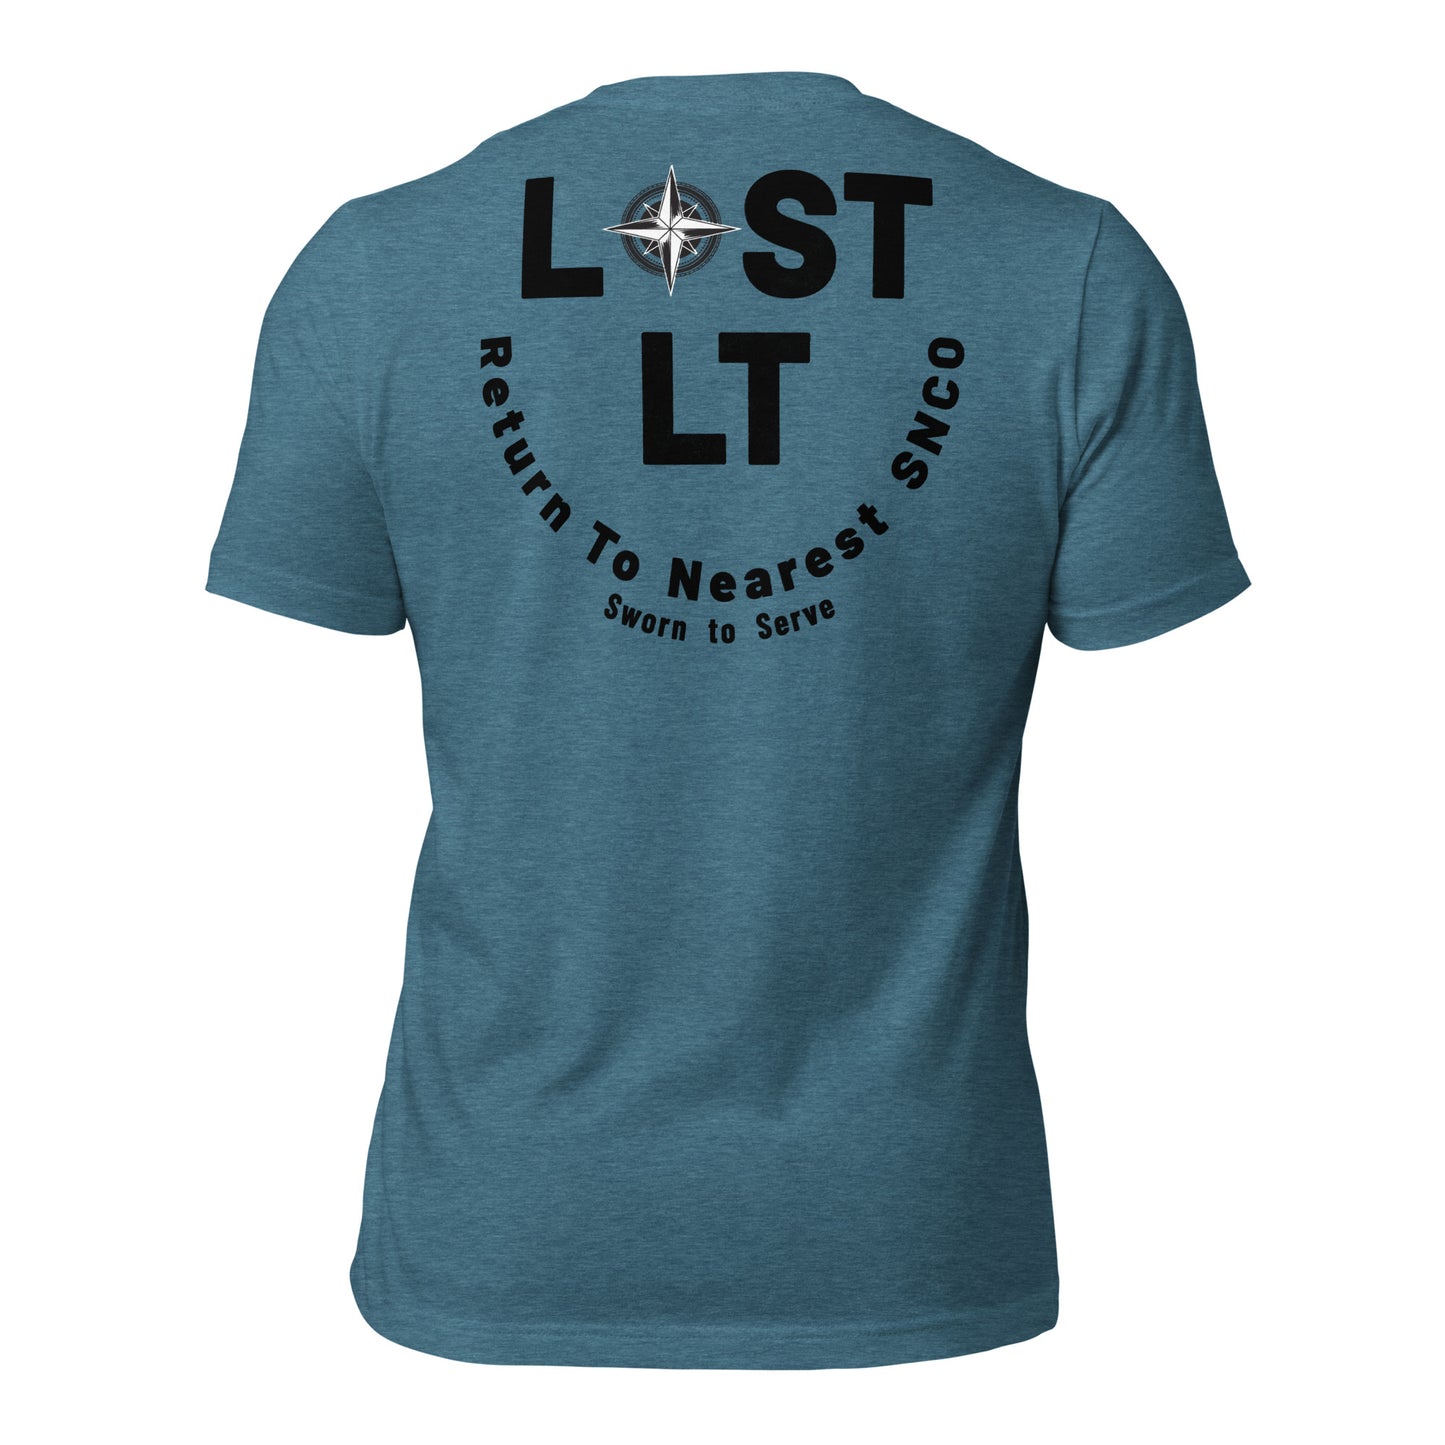 Lost Lt T-Shirt